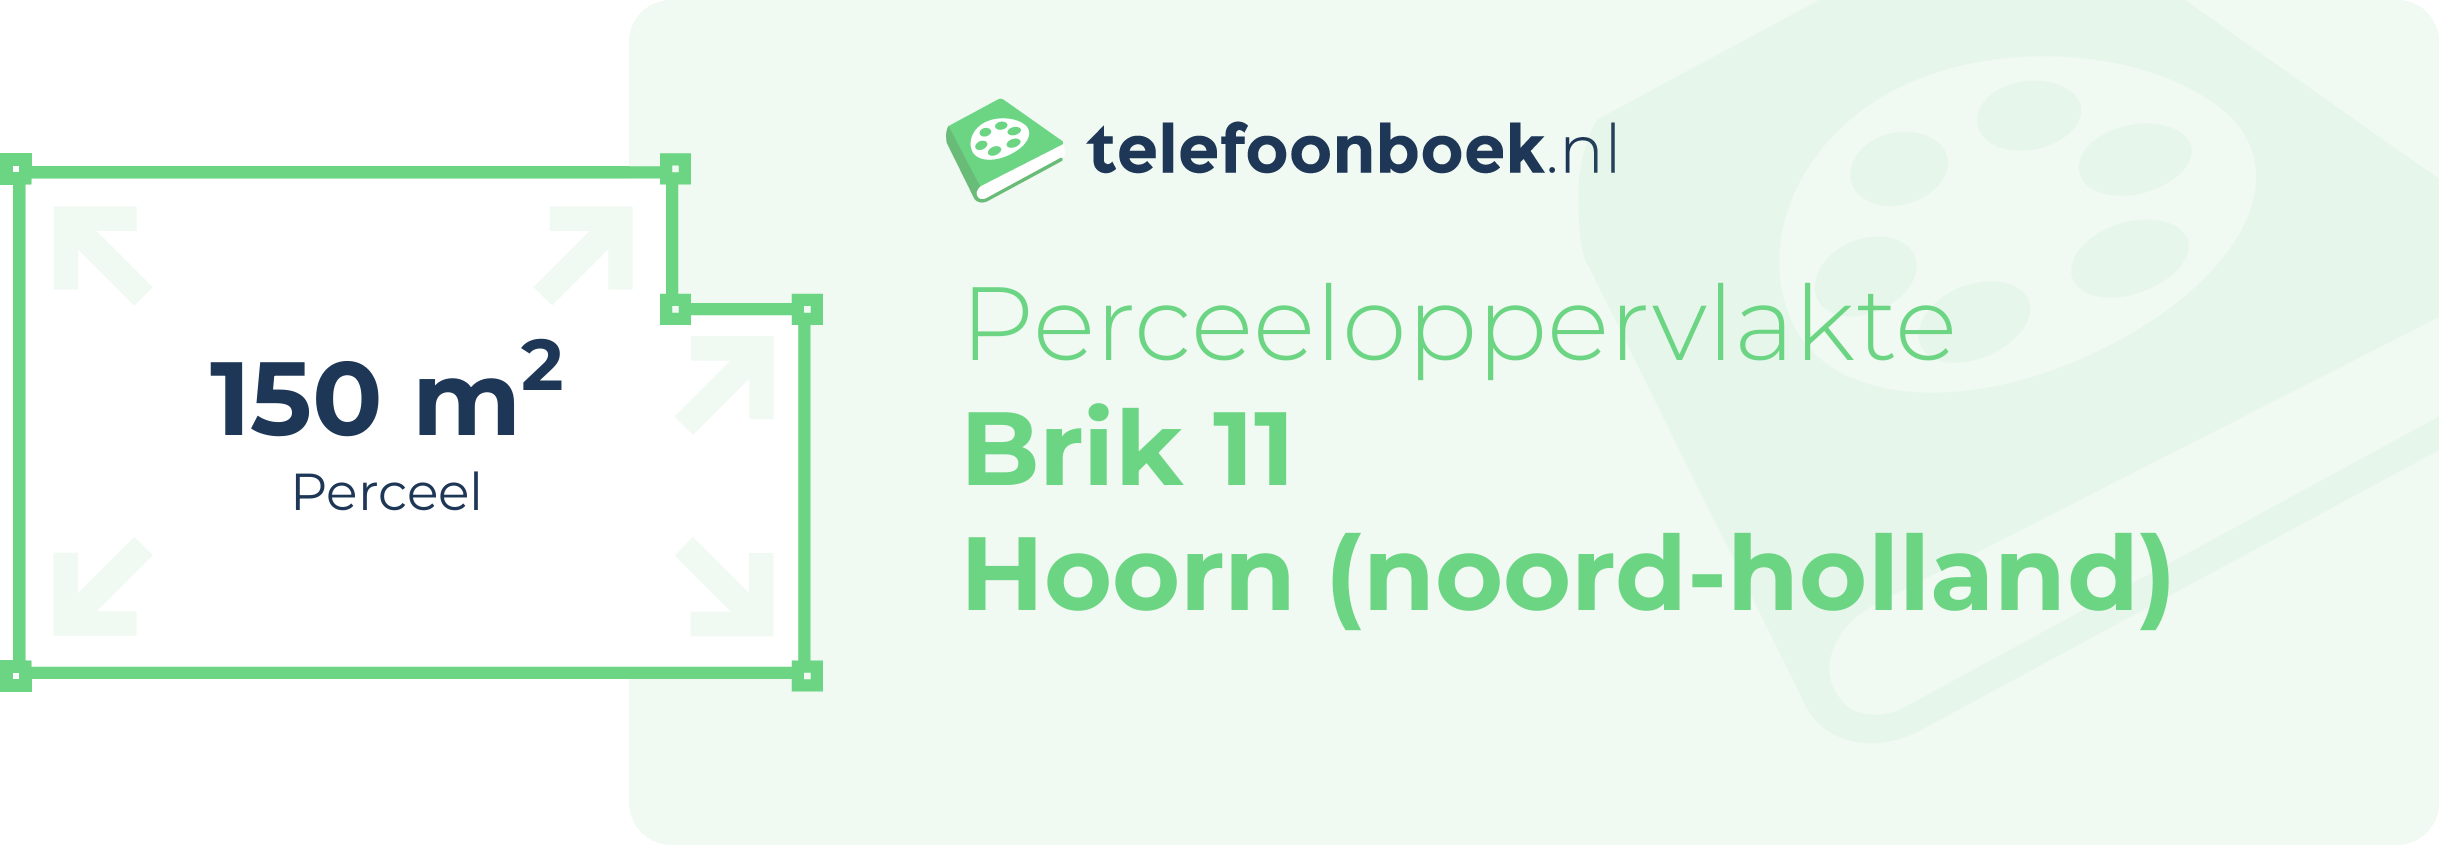 Perceeloppervlakte Brik 11 Hoorn (Noord-Holland)